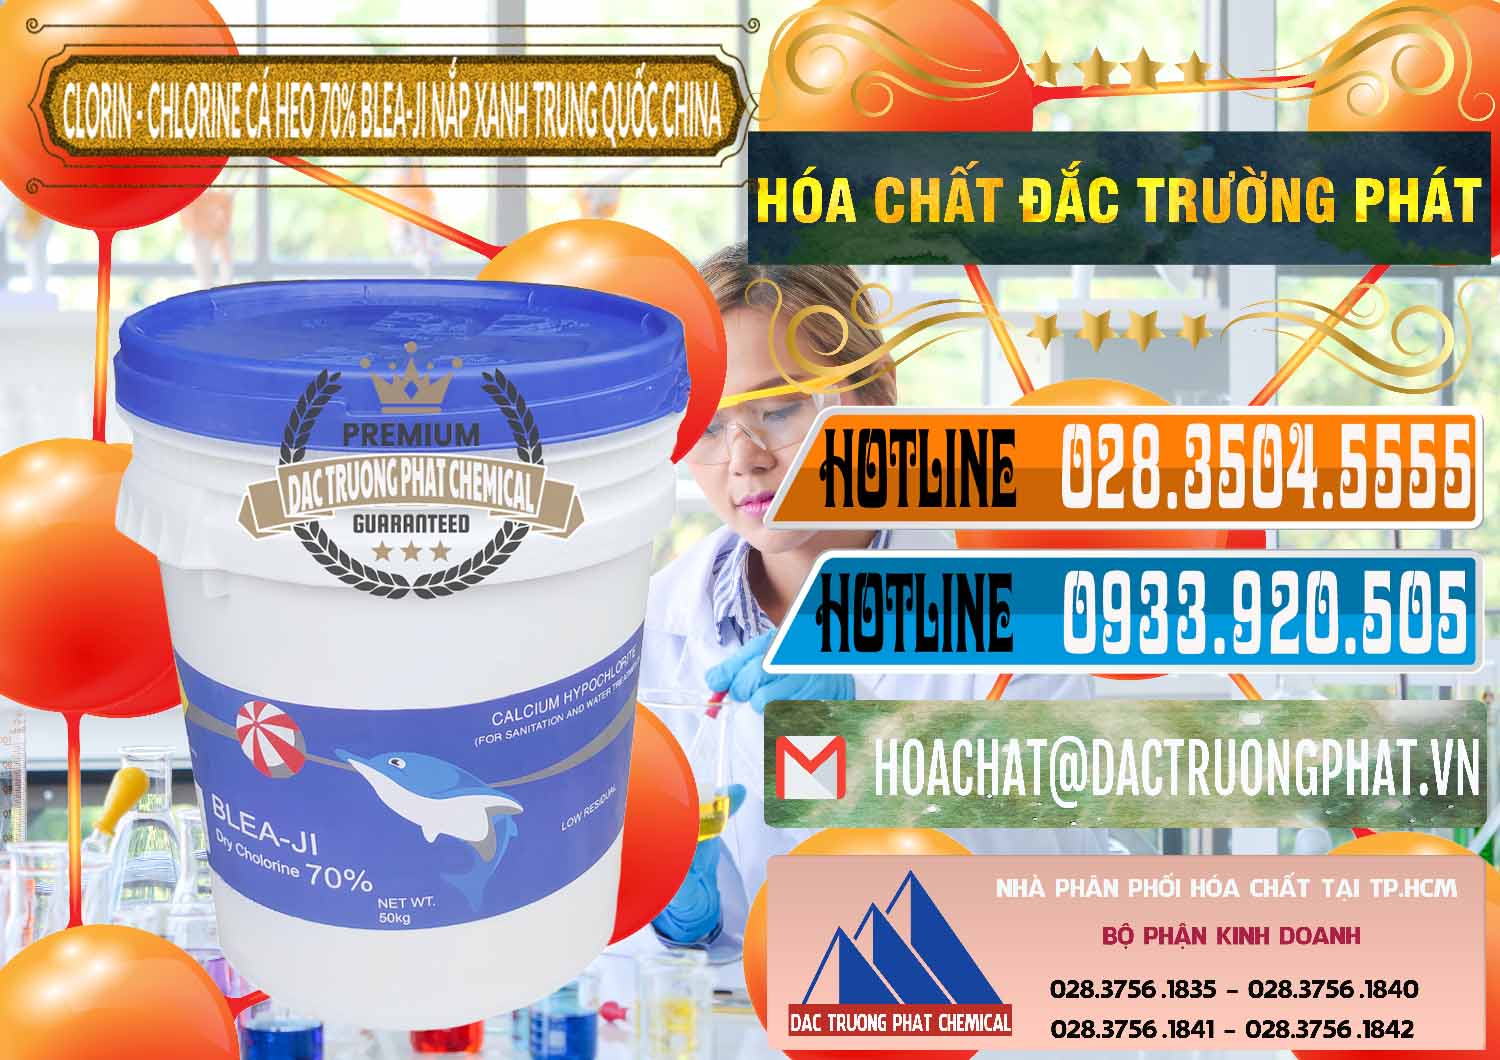 Bán _ cung ứng Clorin - Chlorine Cá Heo 70% Cá Heo Blea-Ji Thùng Tròn Nắp Xanh Trung Quốc China - 0208 - Chuyên phân phối _ cung cấp hóa chất tại TP.HCM - stmp.net